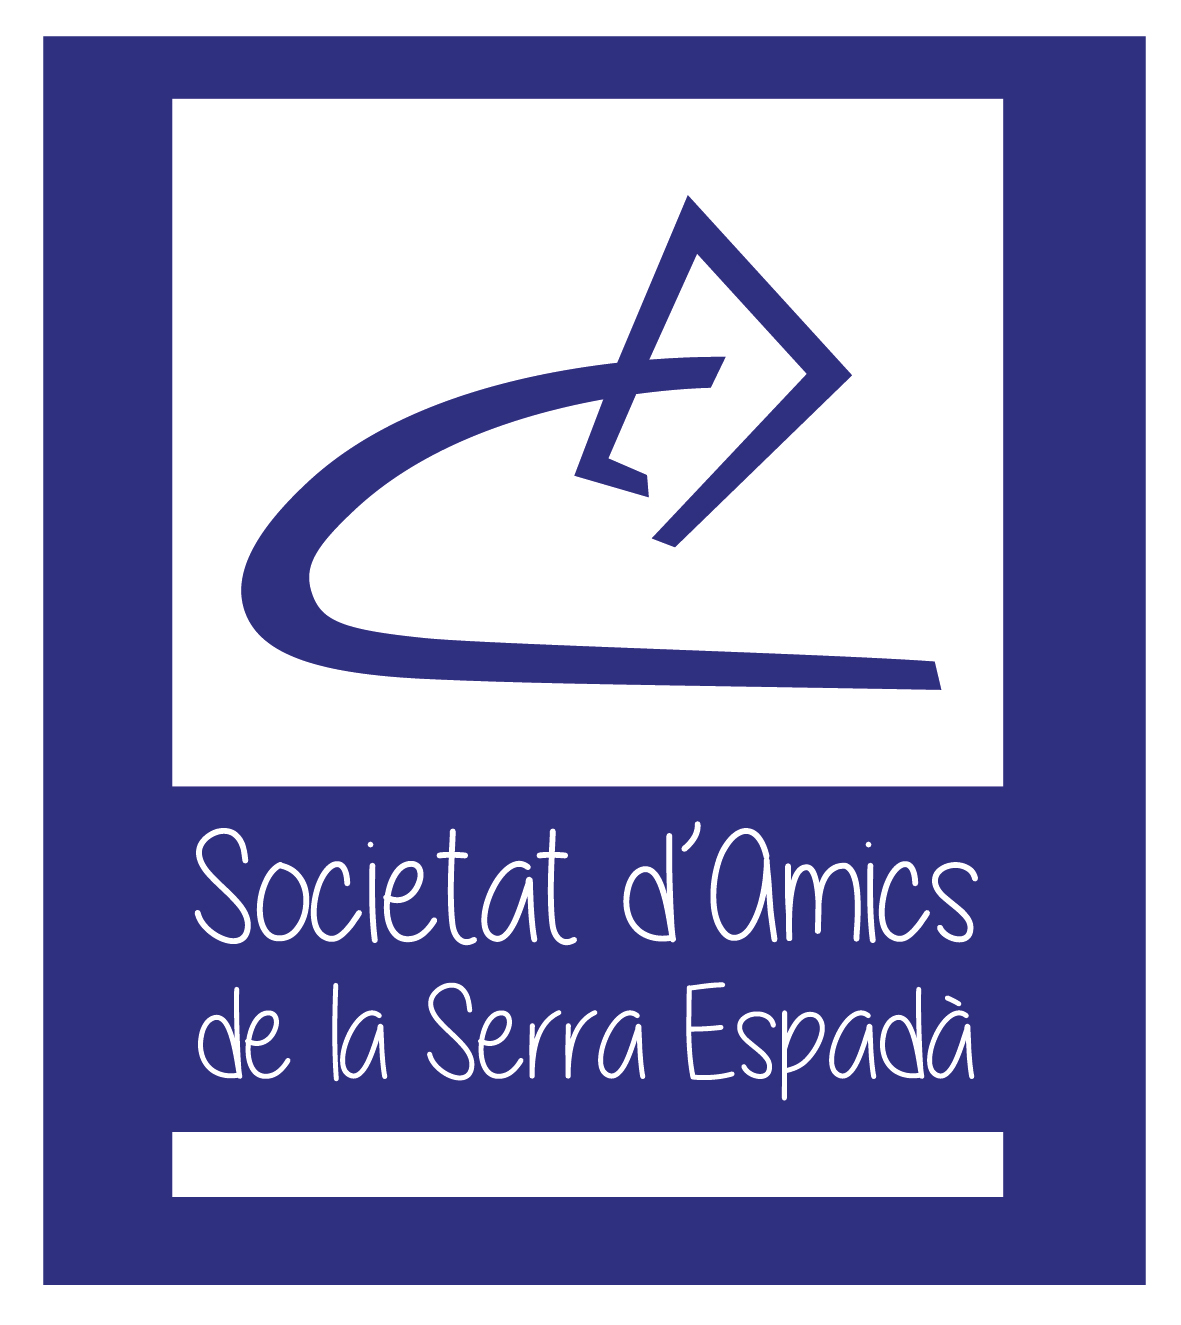 1. Societat d'Amics de la Serra Espadà